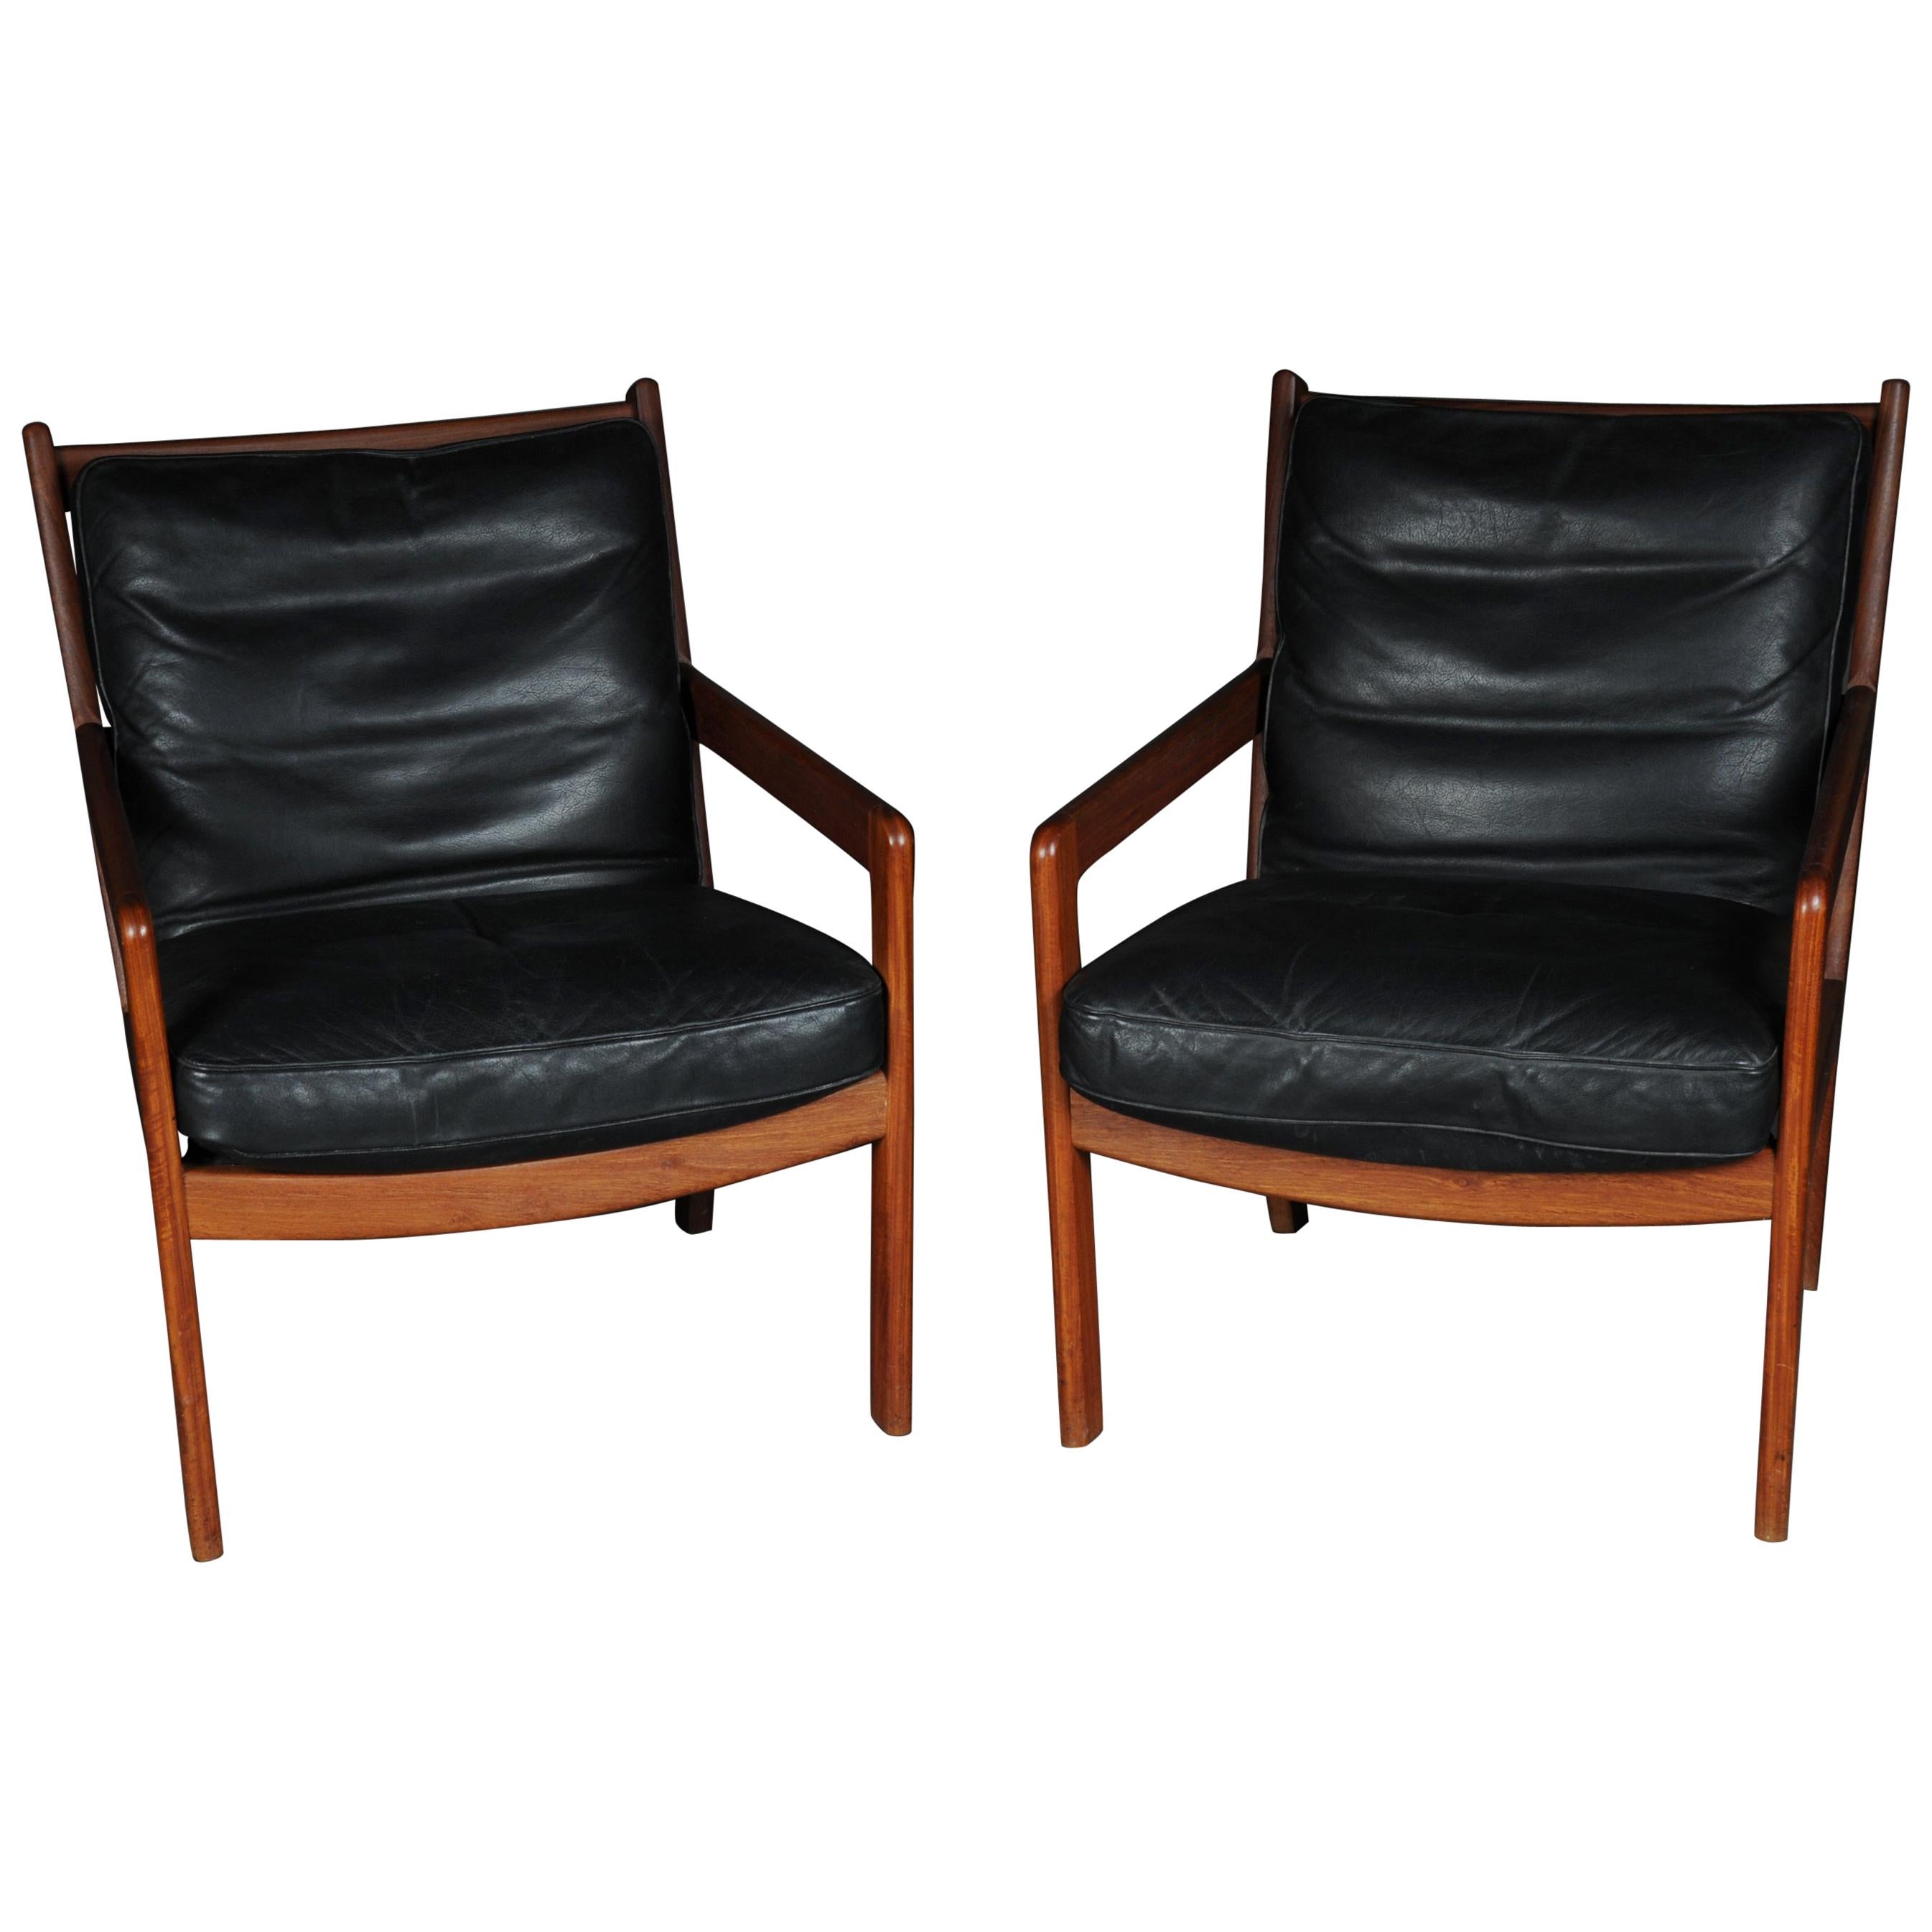 Paar Vintage-Sessel aus Teakholz, Stühle, 1960er-1970er Jahre, Dänisch